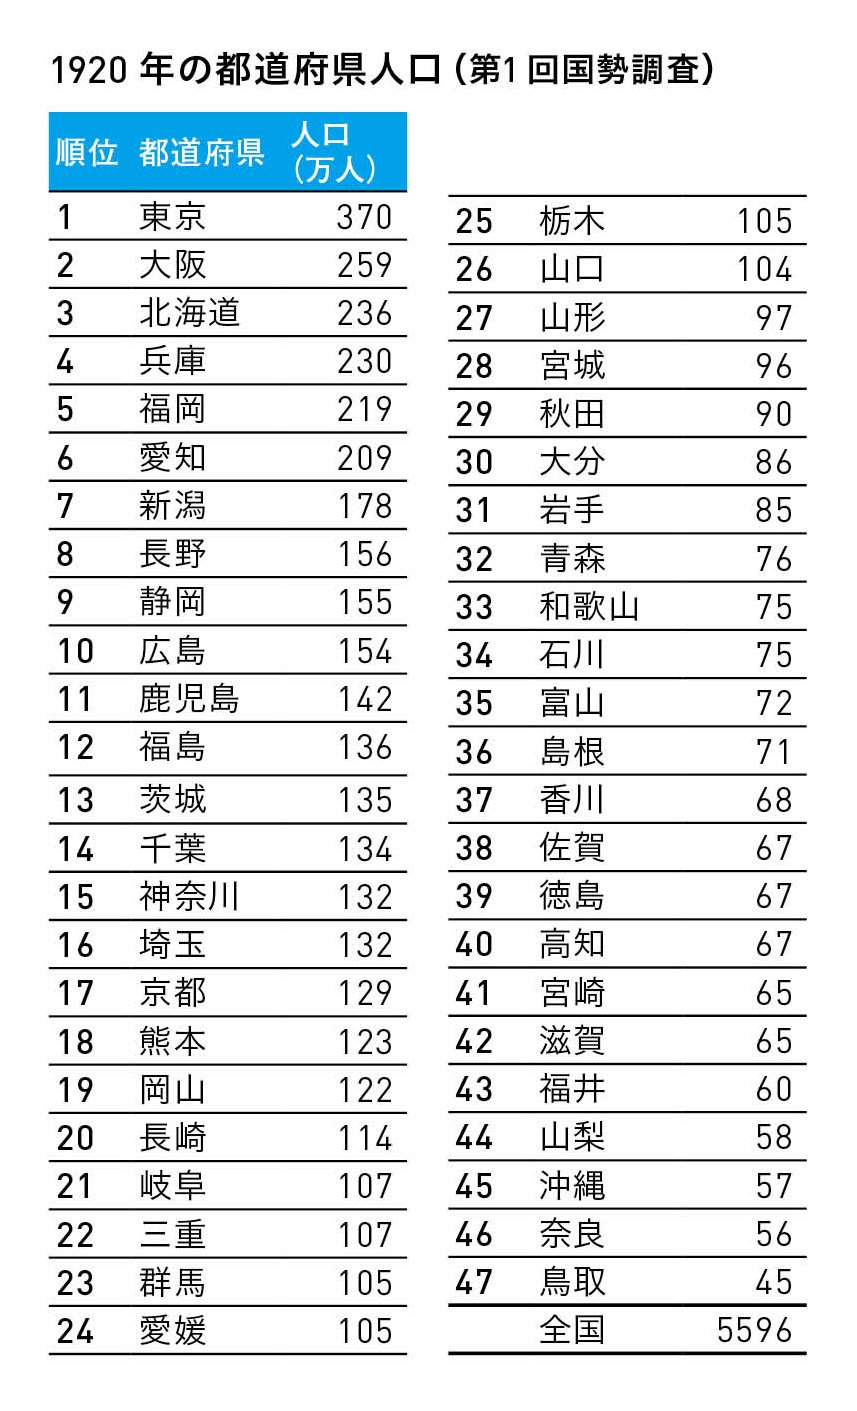 意外な結果 100年前の都道府県人口ランキング 1位東京 2位大阪 3位は ニュース3面鏡 ダイヤモンド オンライン